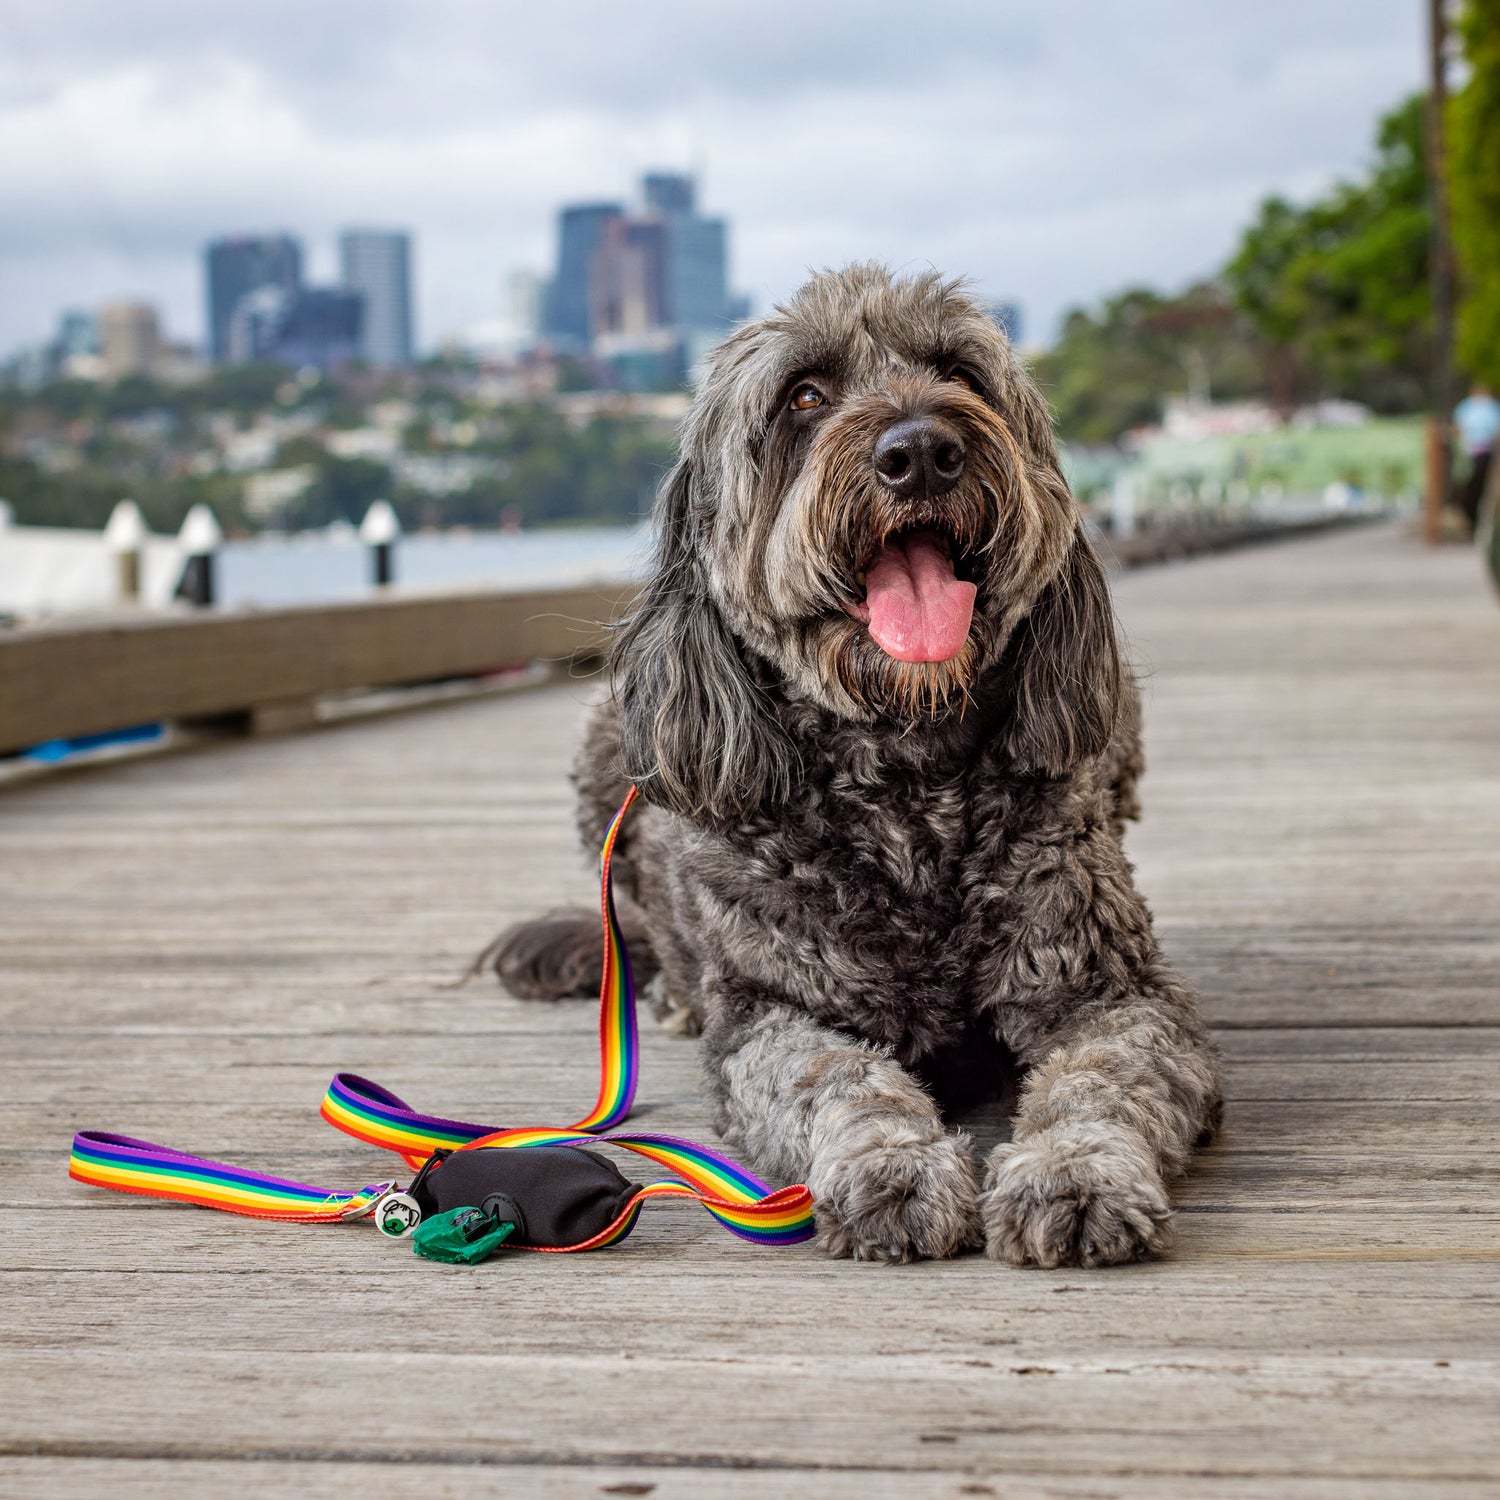 Groodle wearing rainbow pride leash